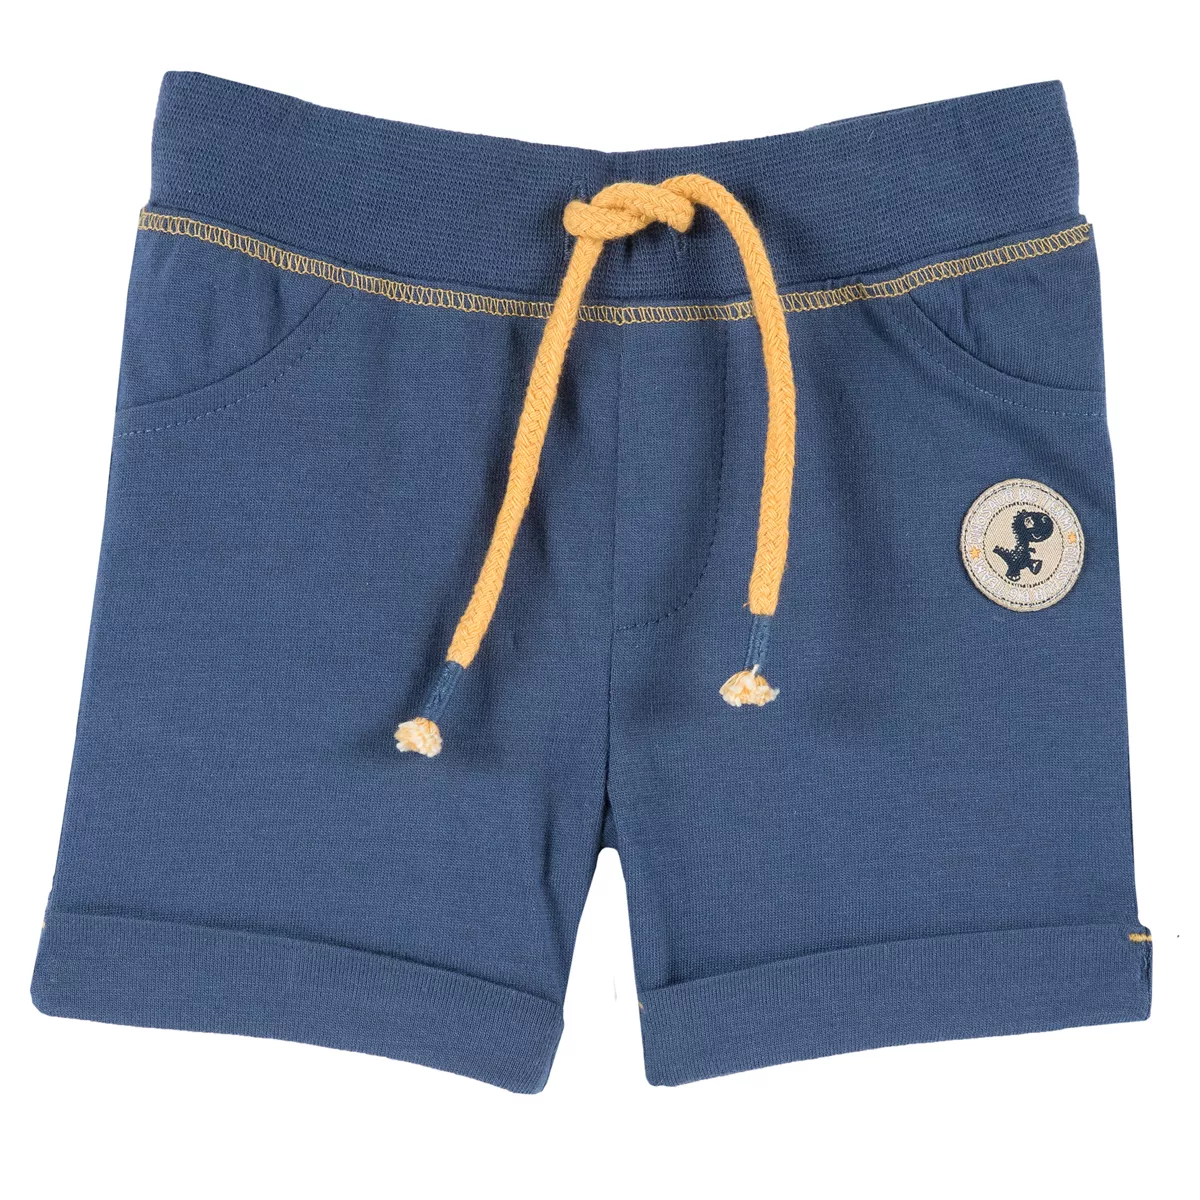 Pantalon scurt copii Chicco, jerse, albastru, 86